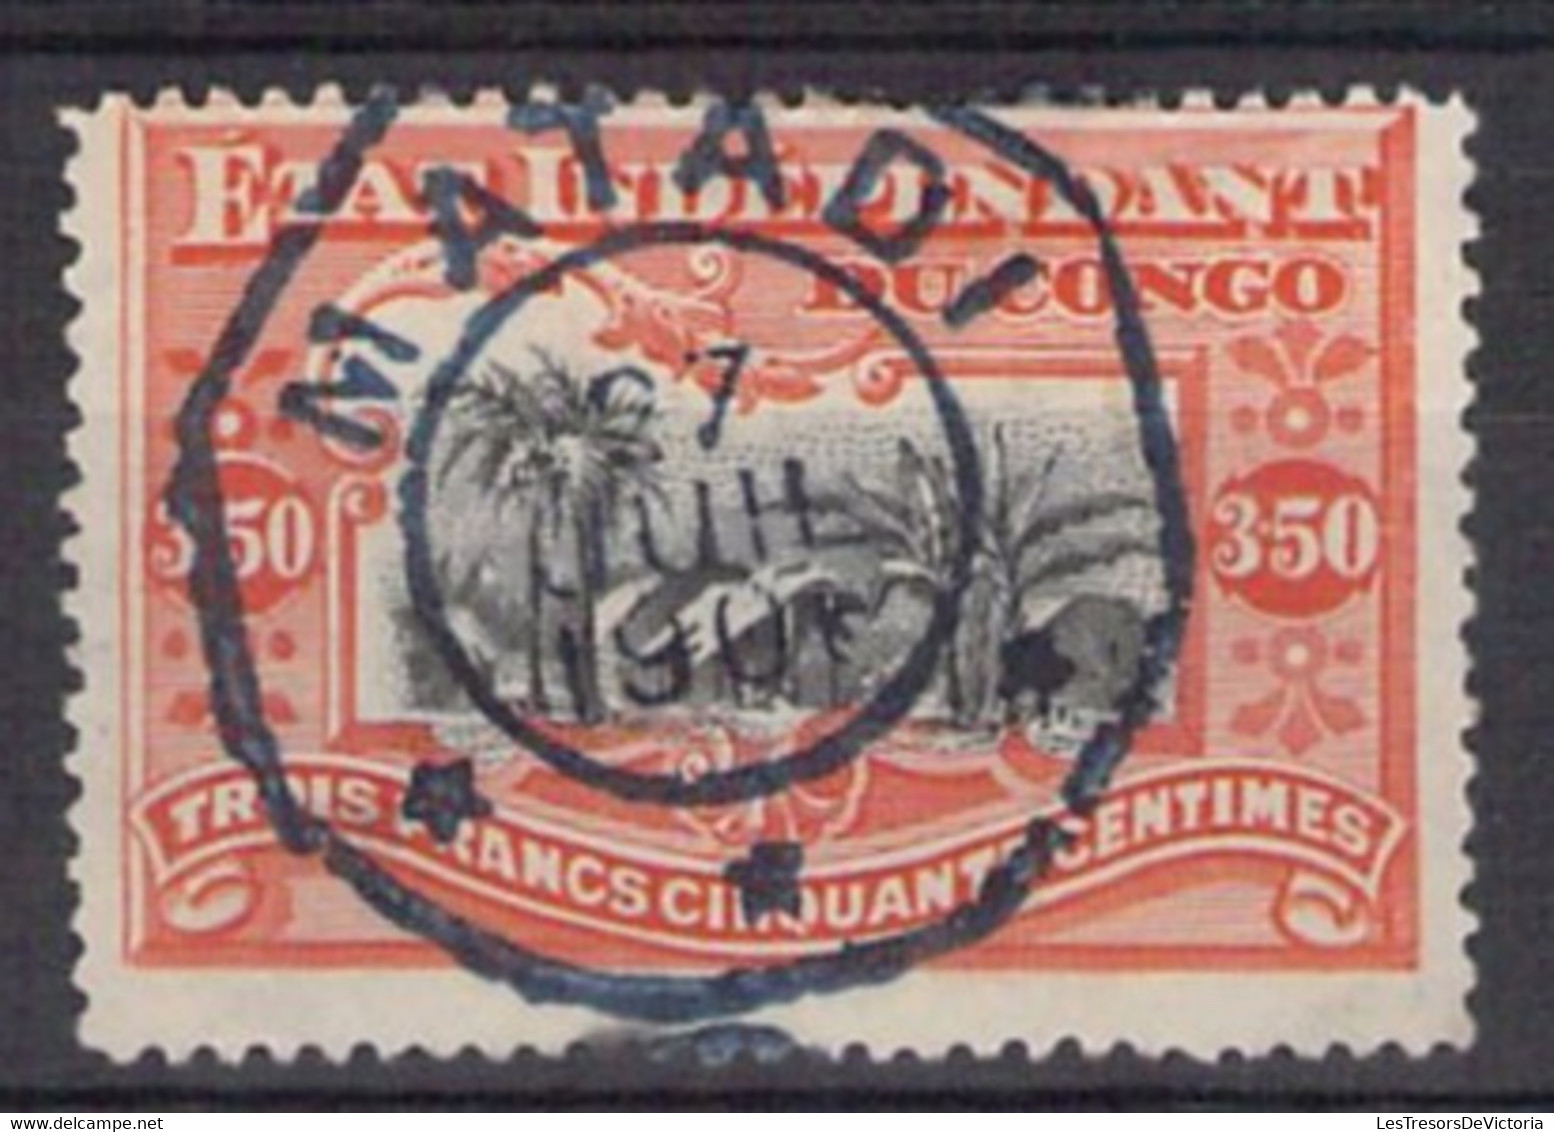 COB 27 Oblit.  - Etat Indépendant Du Congo - 1894 - Cote 210 COB 2022 - 3F50 Vermillon - 1894-1923 Mols: Used